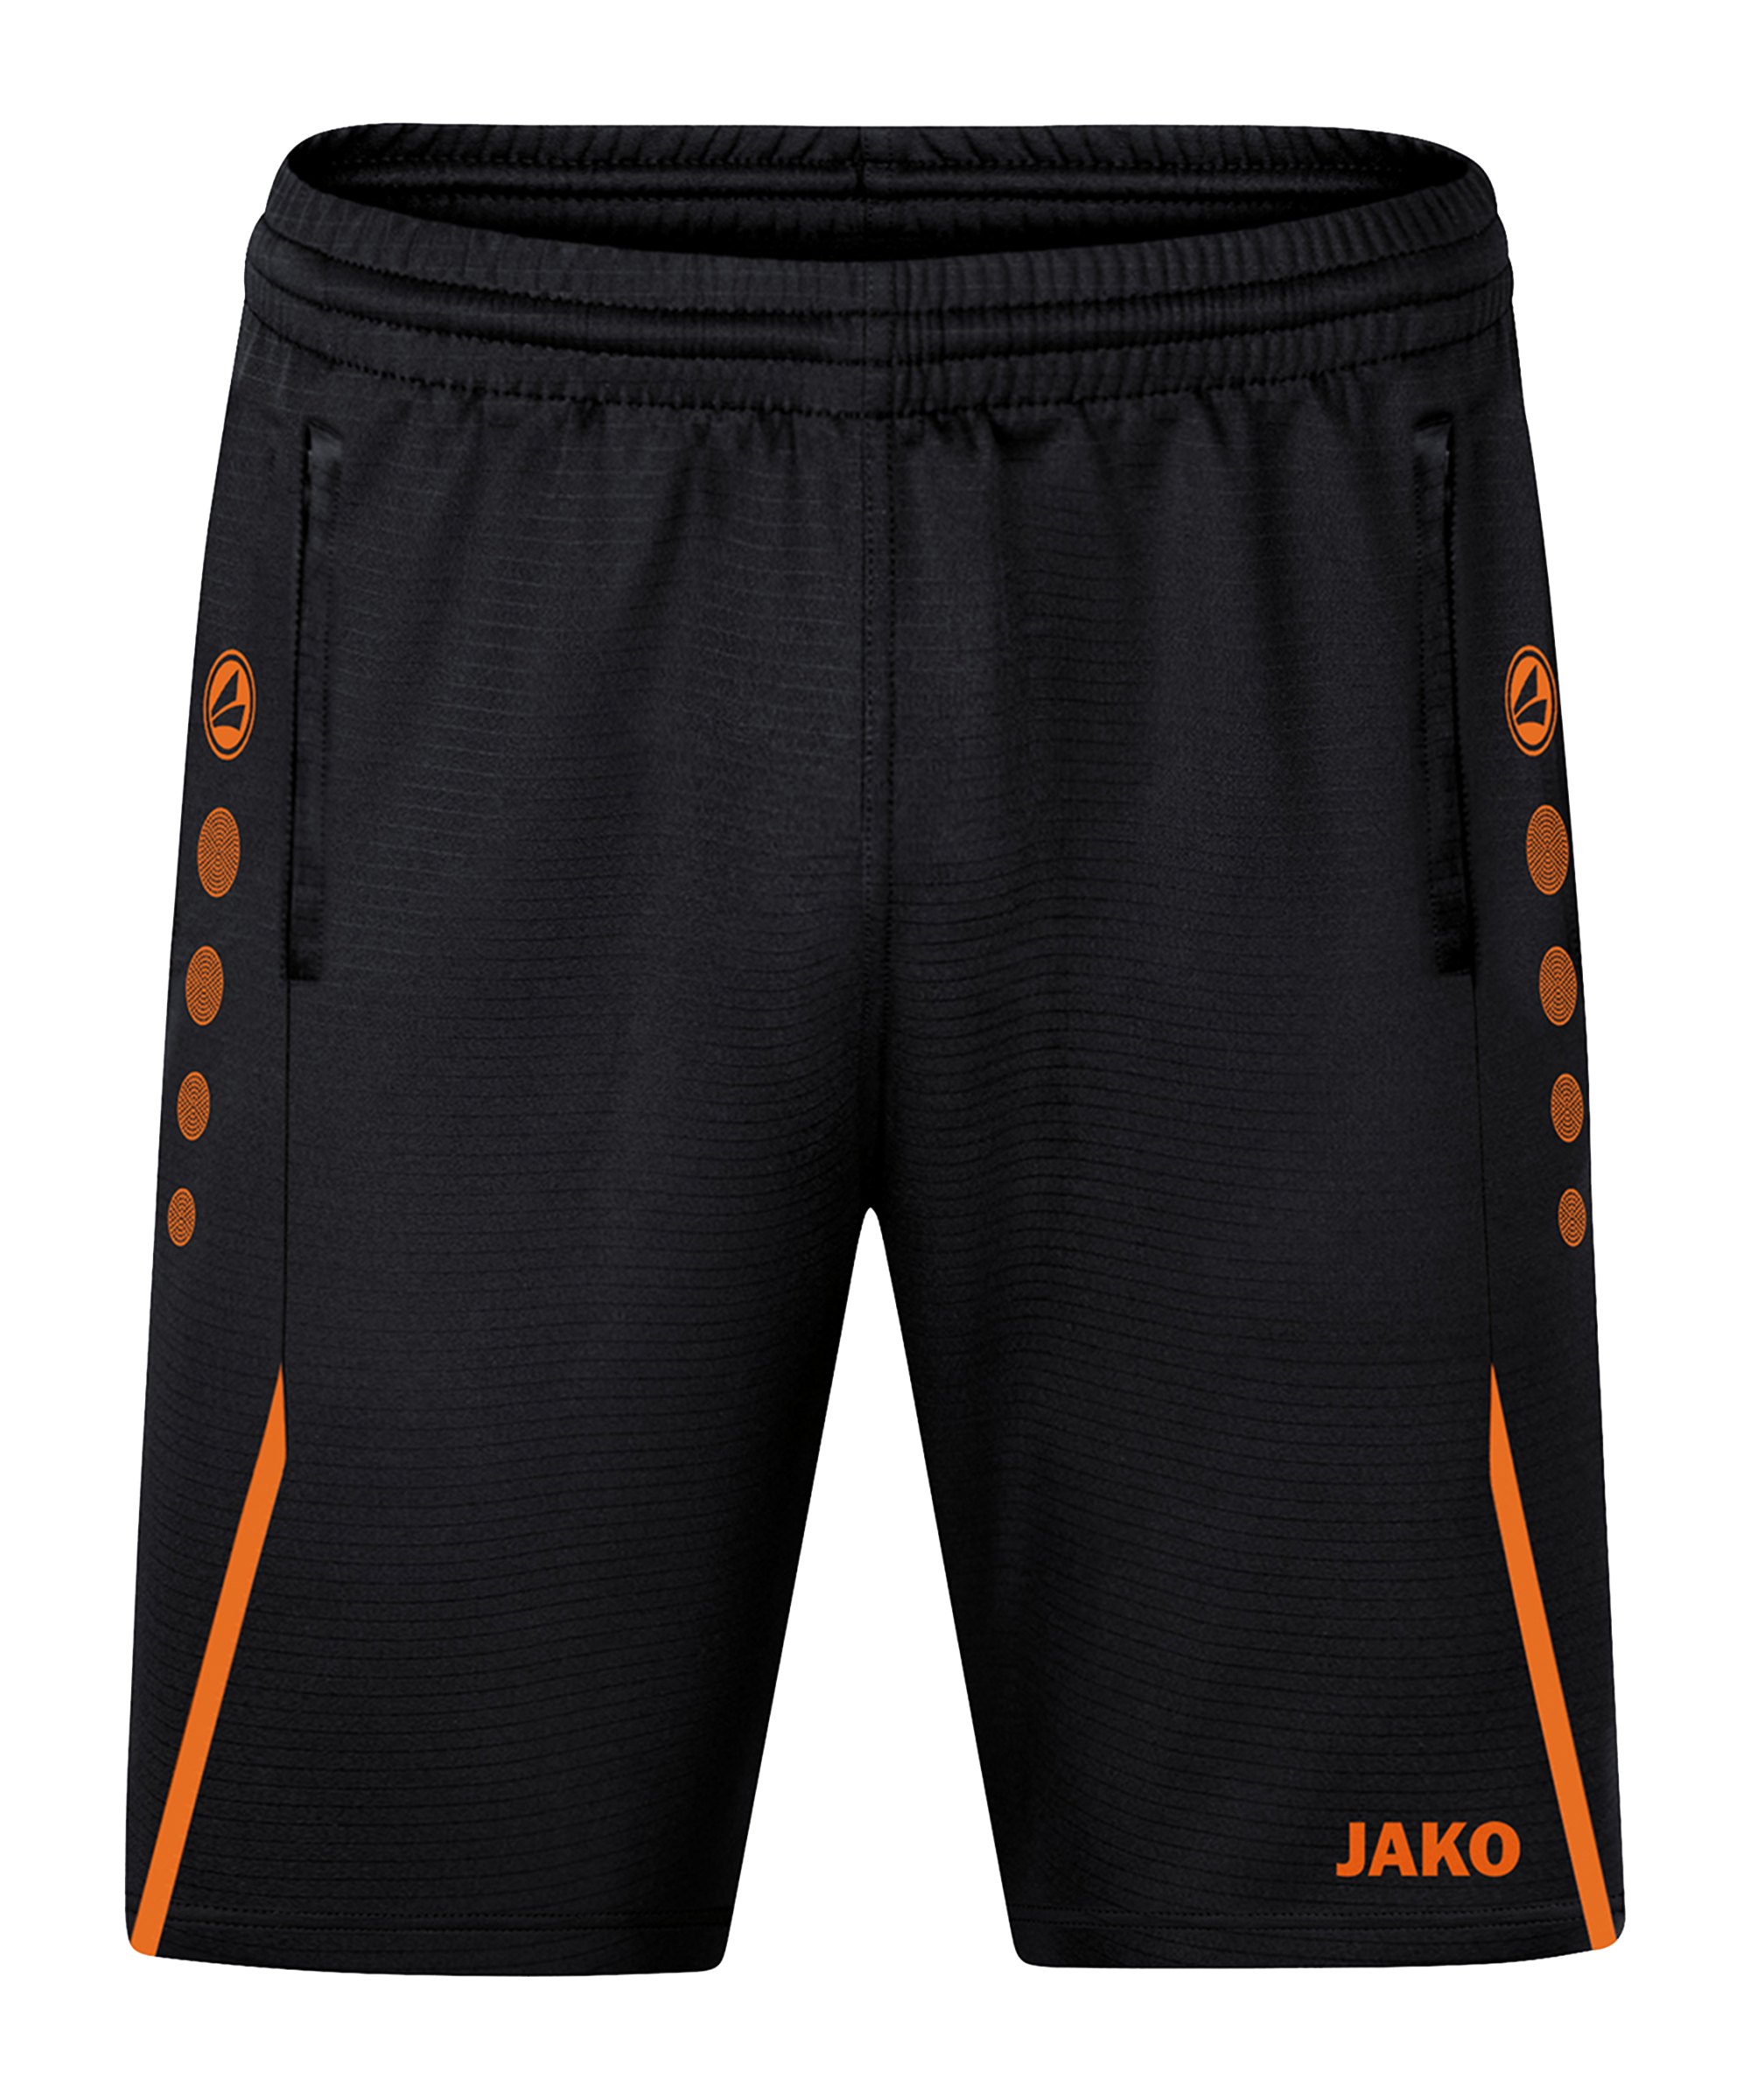 JAKO Challenge Trainingsshort Schwarz Orange F807 - schwarz